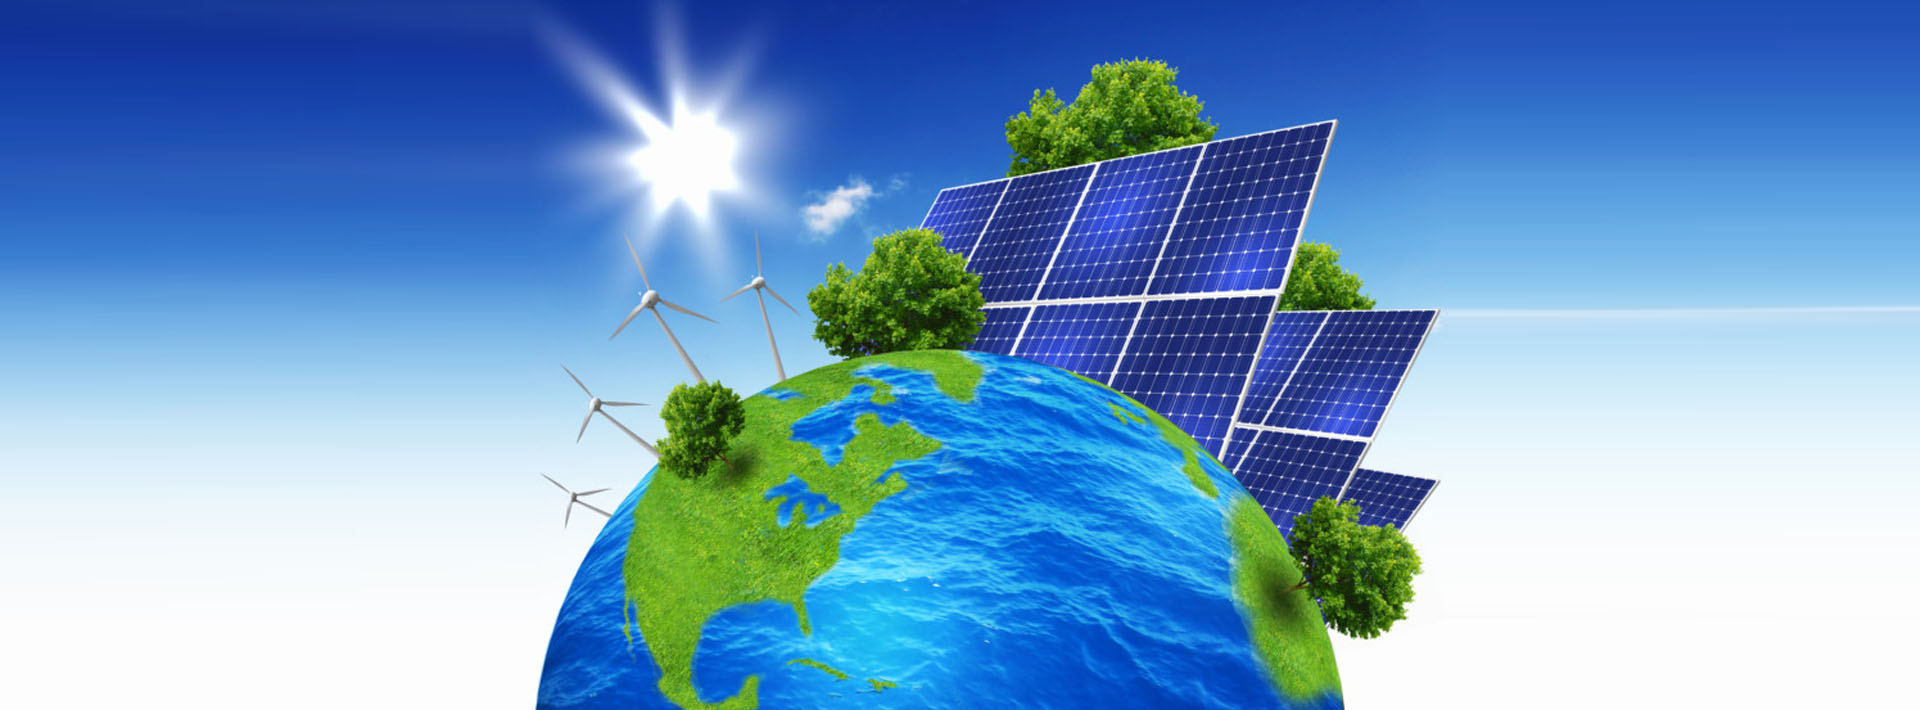 Por que o Sistema de Iluminação por energia solar é eficiente?